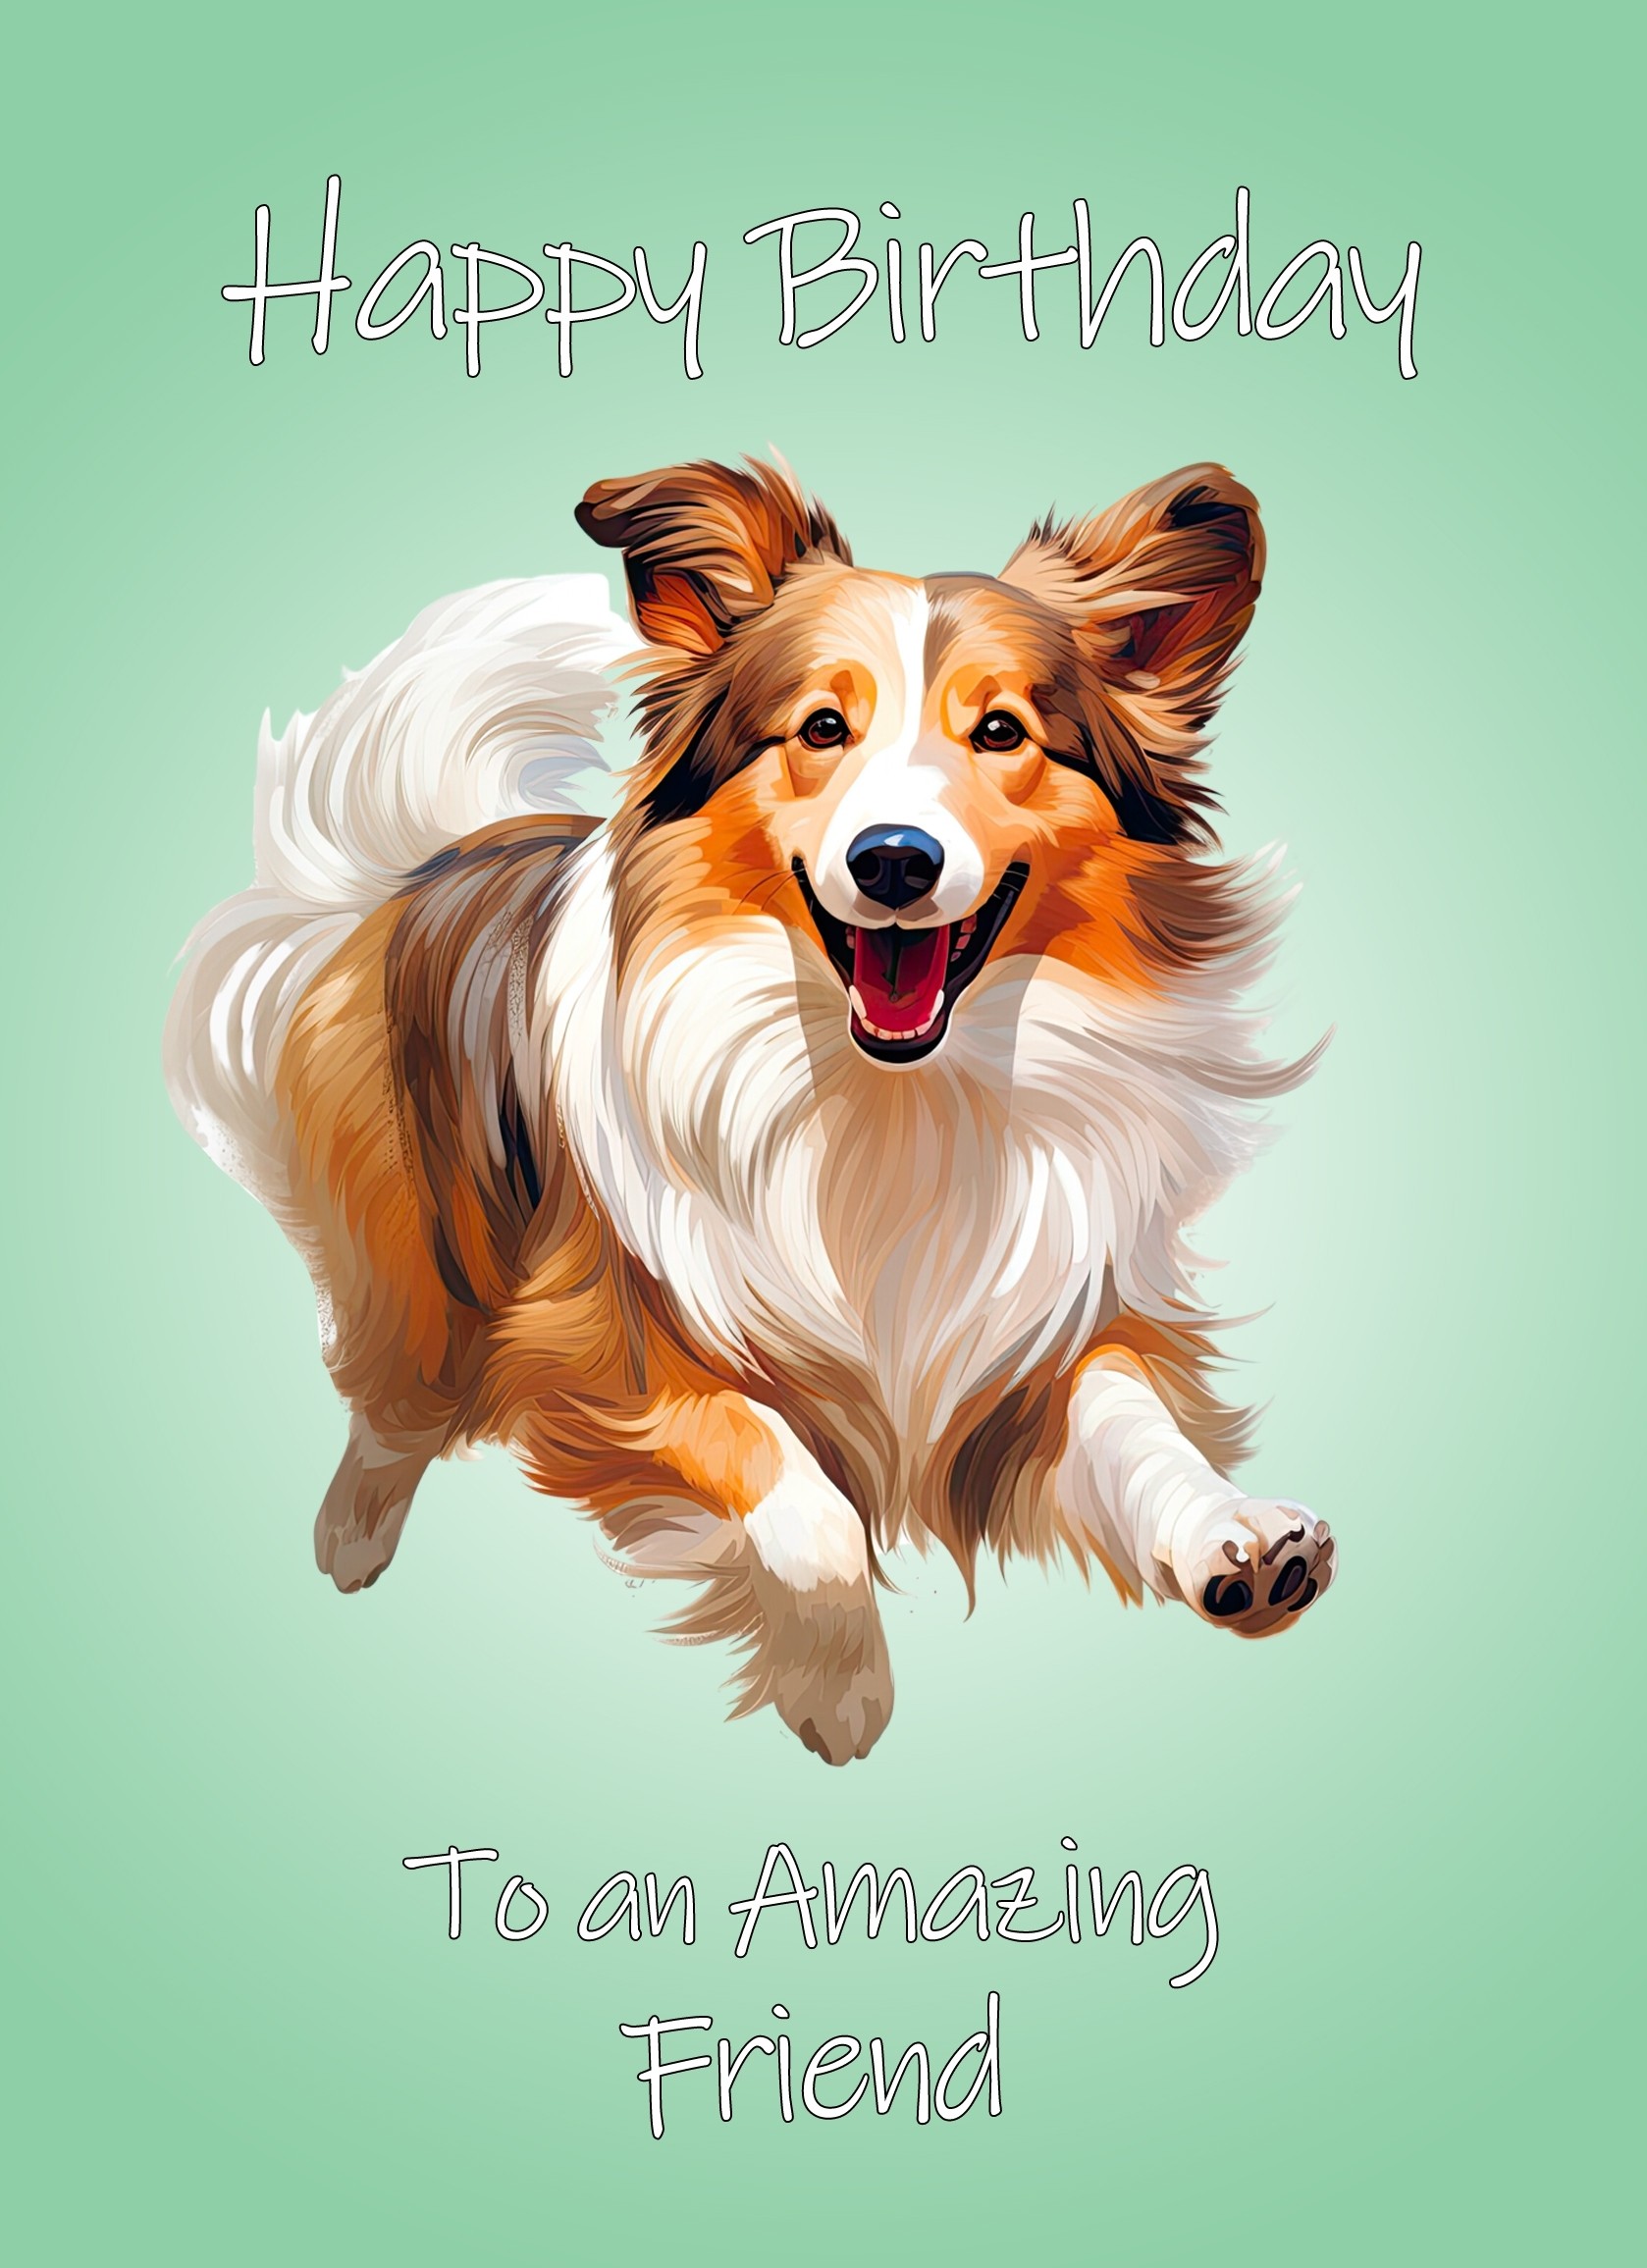 Shetland Sheepdog Dog Birthday Card For Friend